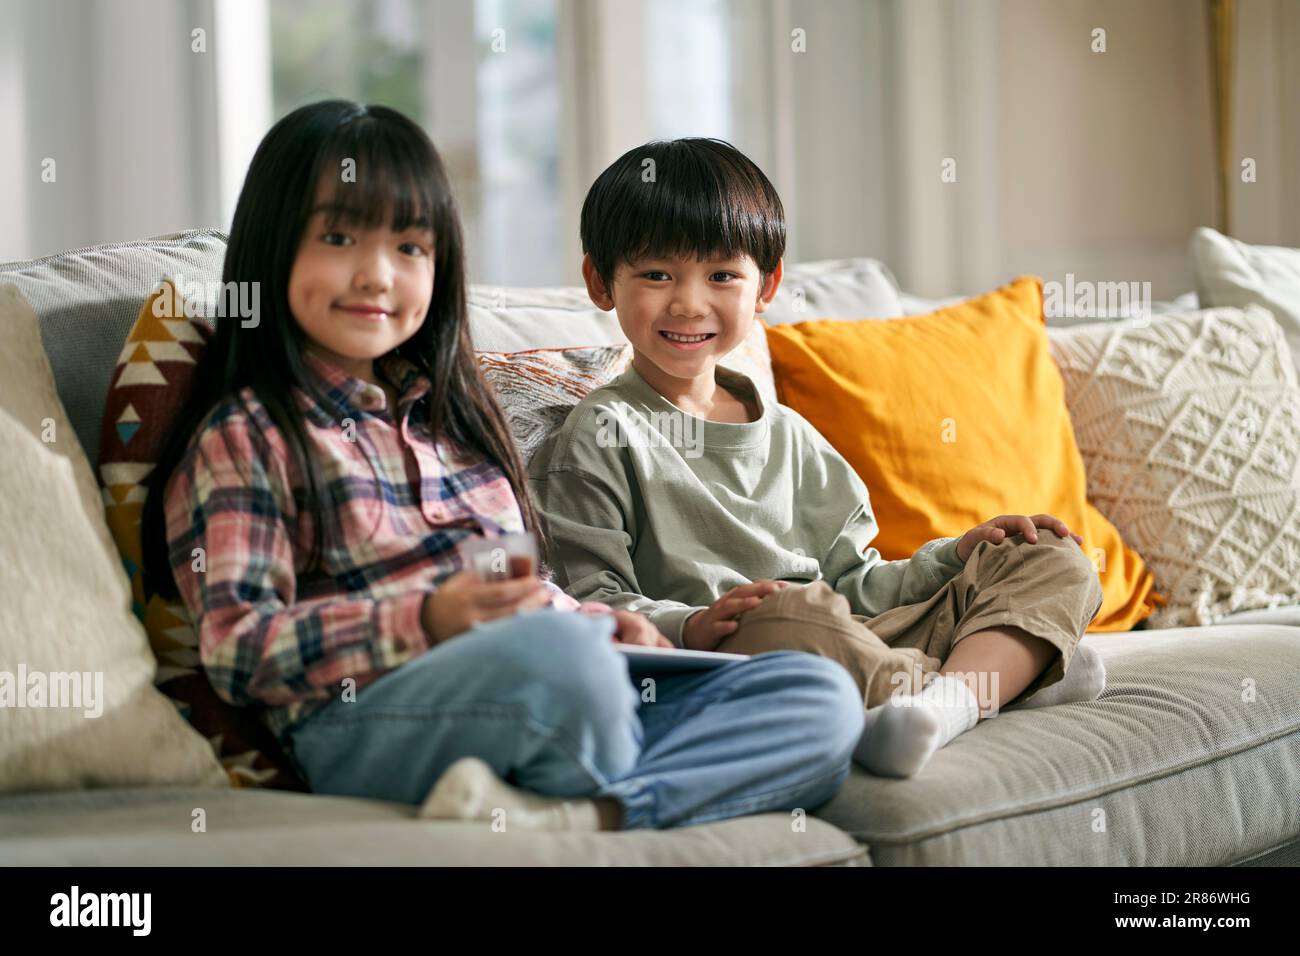 portrait de deux enfants asiatiques frère et soeur assis sur un canapé de famille à la maison regardant l'appareil photo sourire Banque D'Images